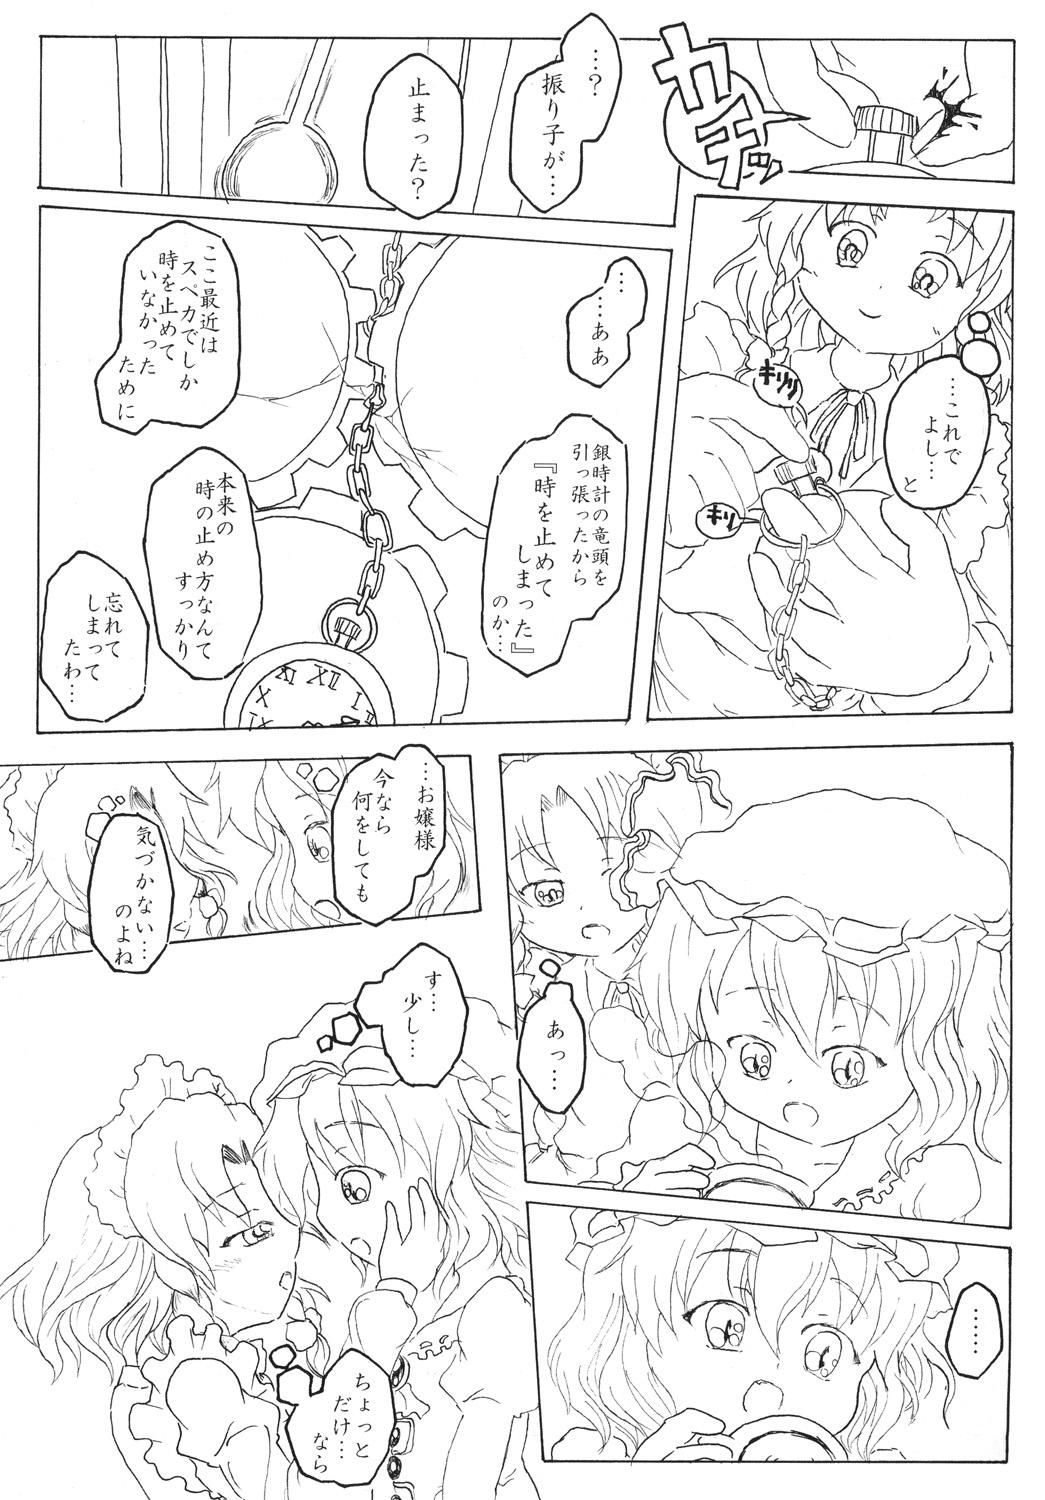 Gozando Sakuya no toki kan - Sakuya's Time F*ck - Touhou project T Girl - Page 6